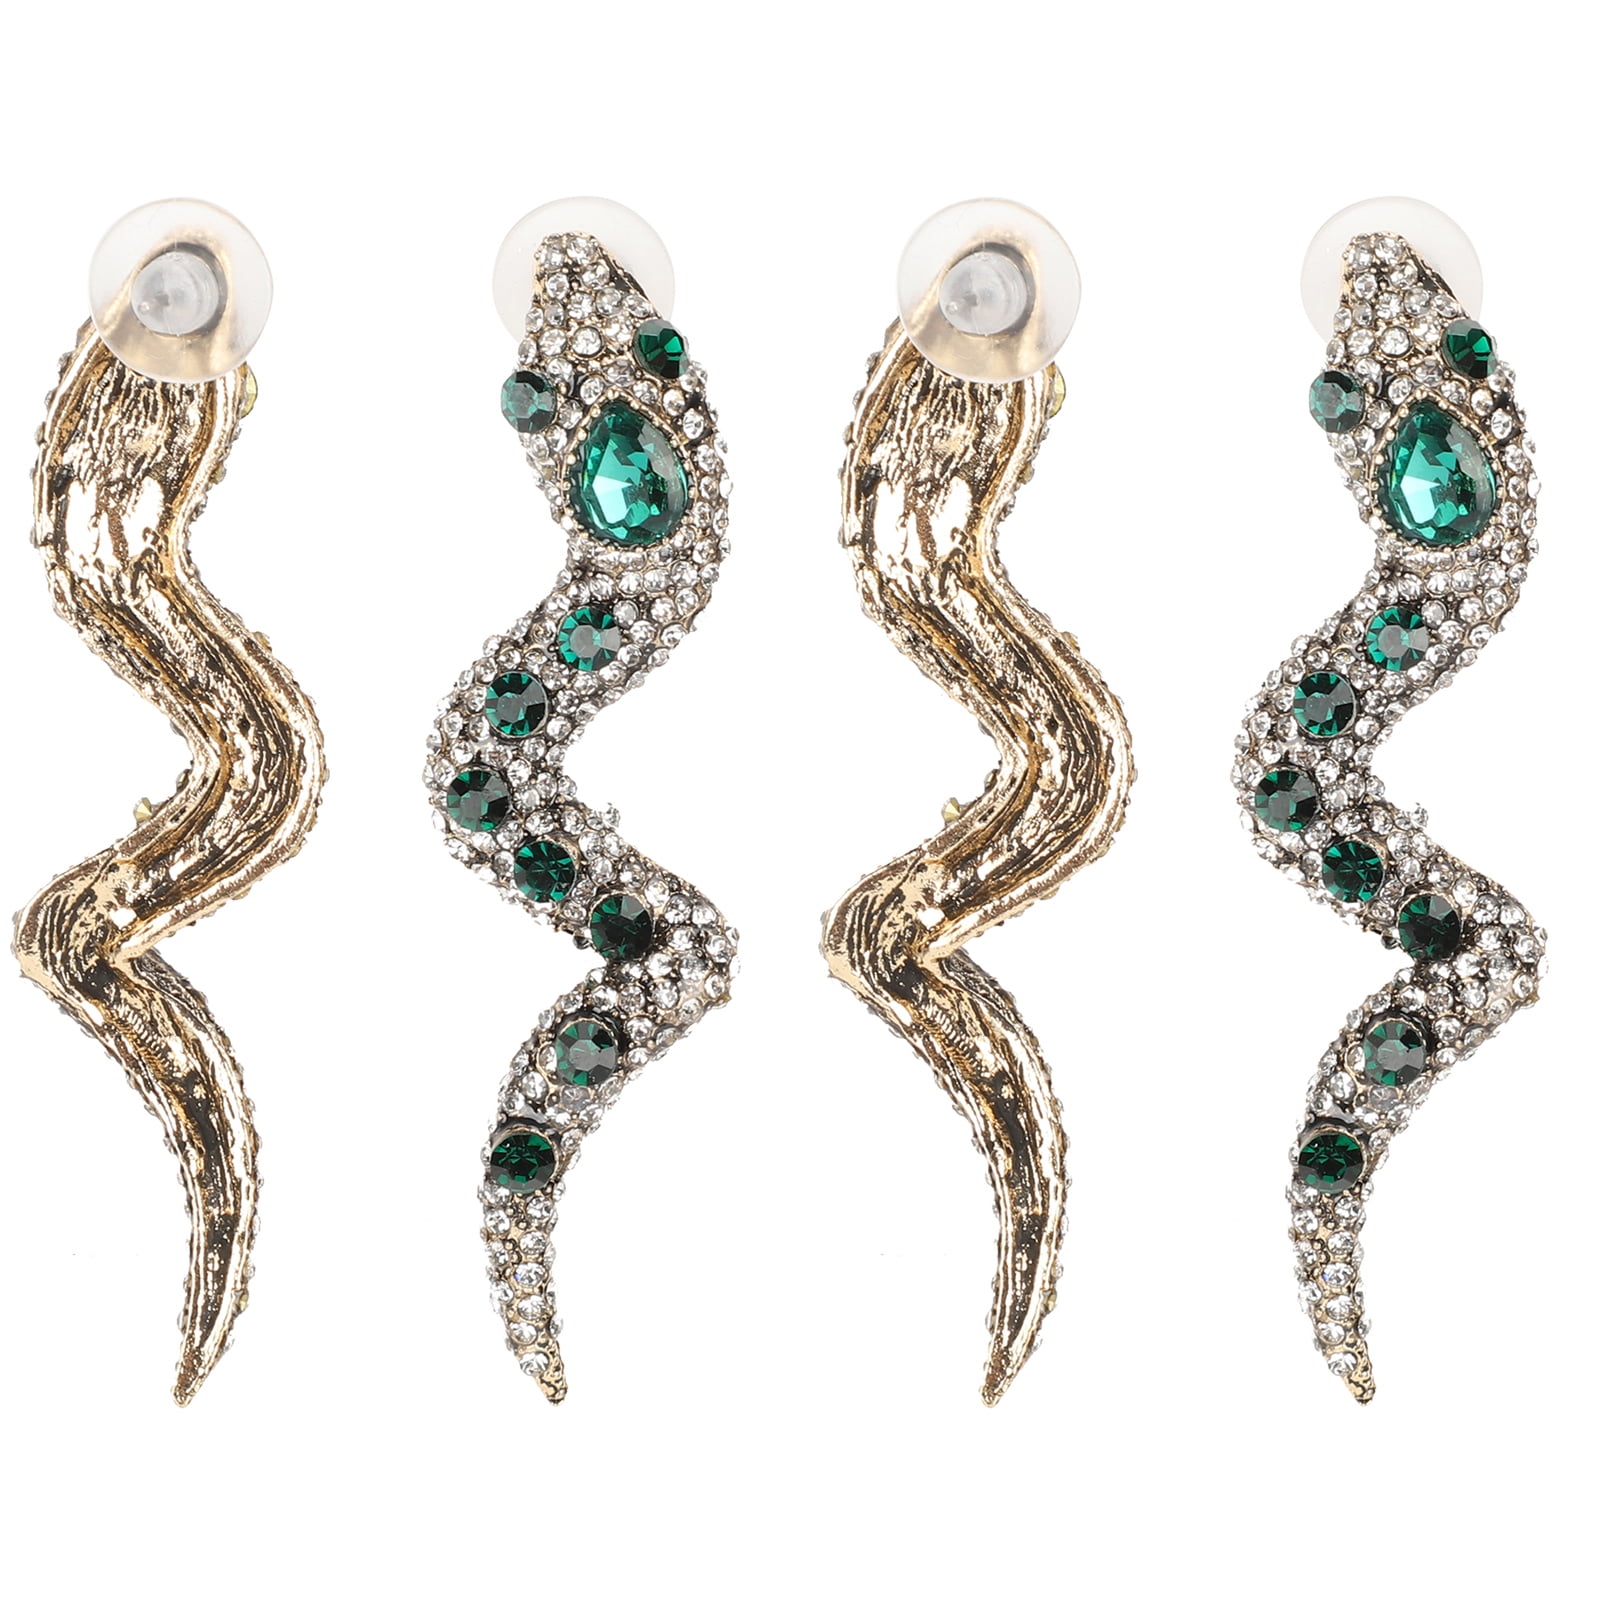 OTVIAP Metal Earrings,4Pcs Snake Earrings Fashion Metal Wild Dangle Stylish  Creativity Clothing Accessories,Wild Earrings 